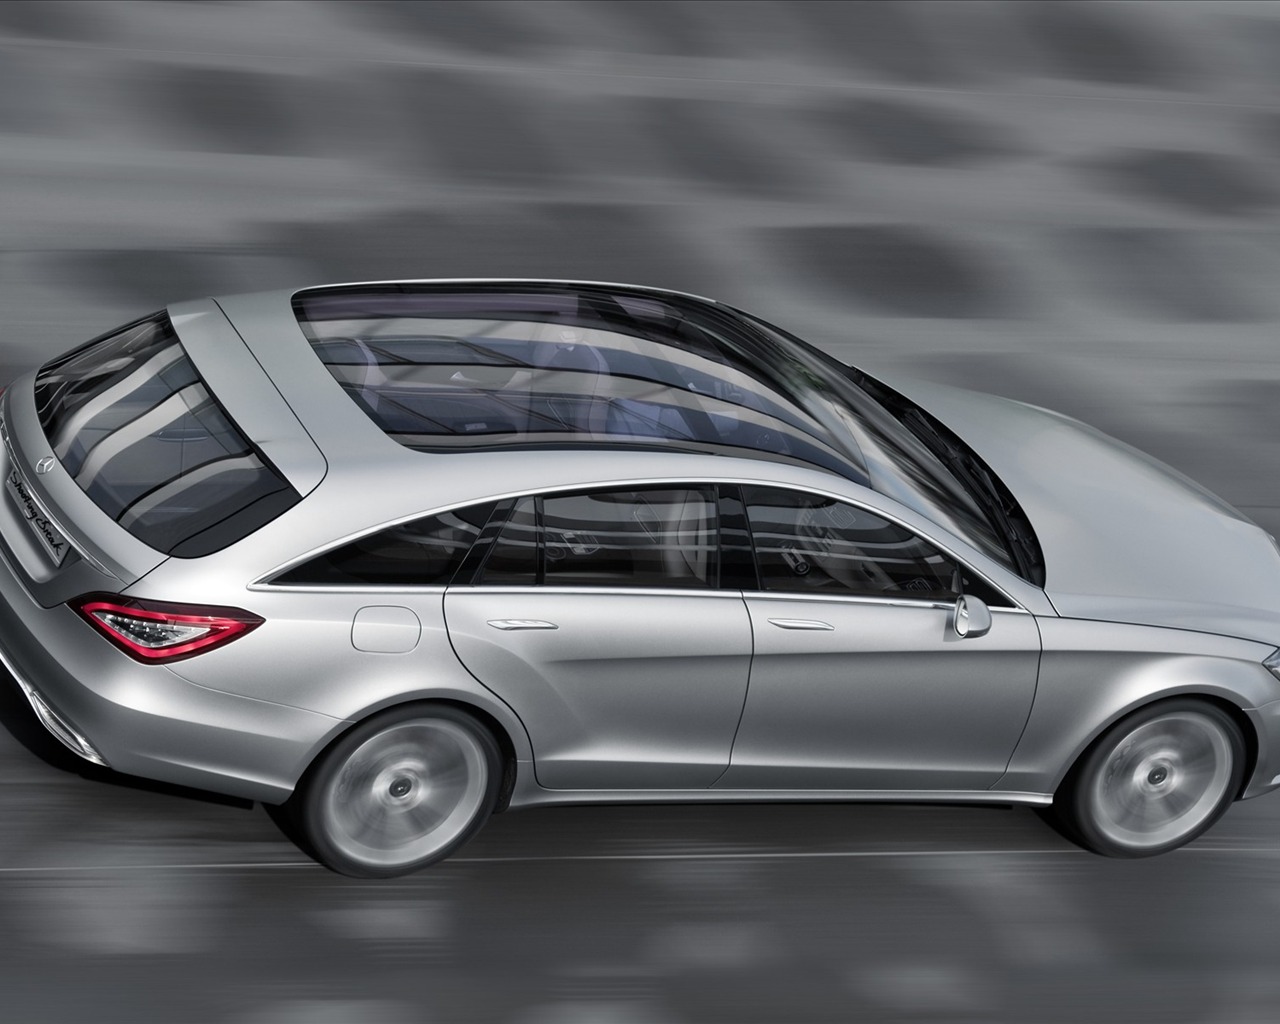 Mercedes-Benz fondos de escritorio de concept car (1) #1 - 1280x1024